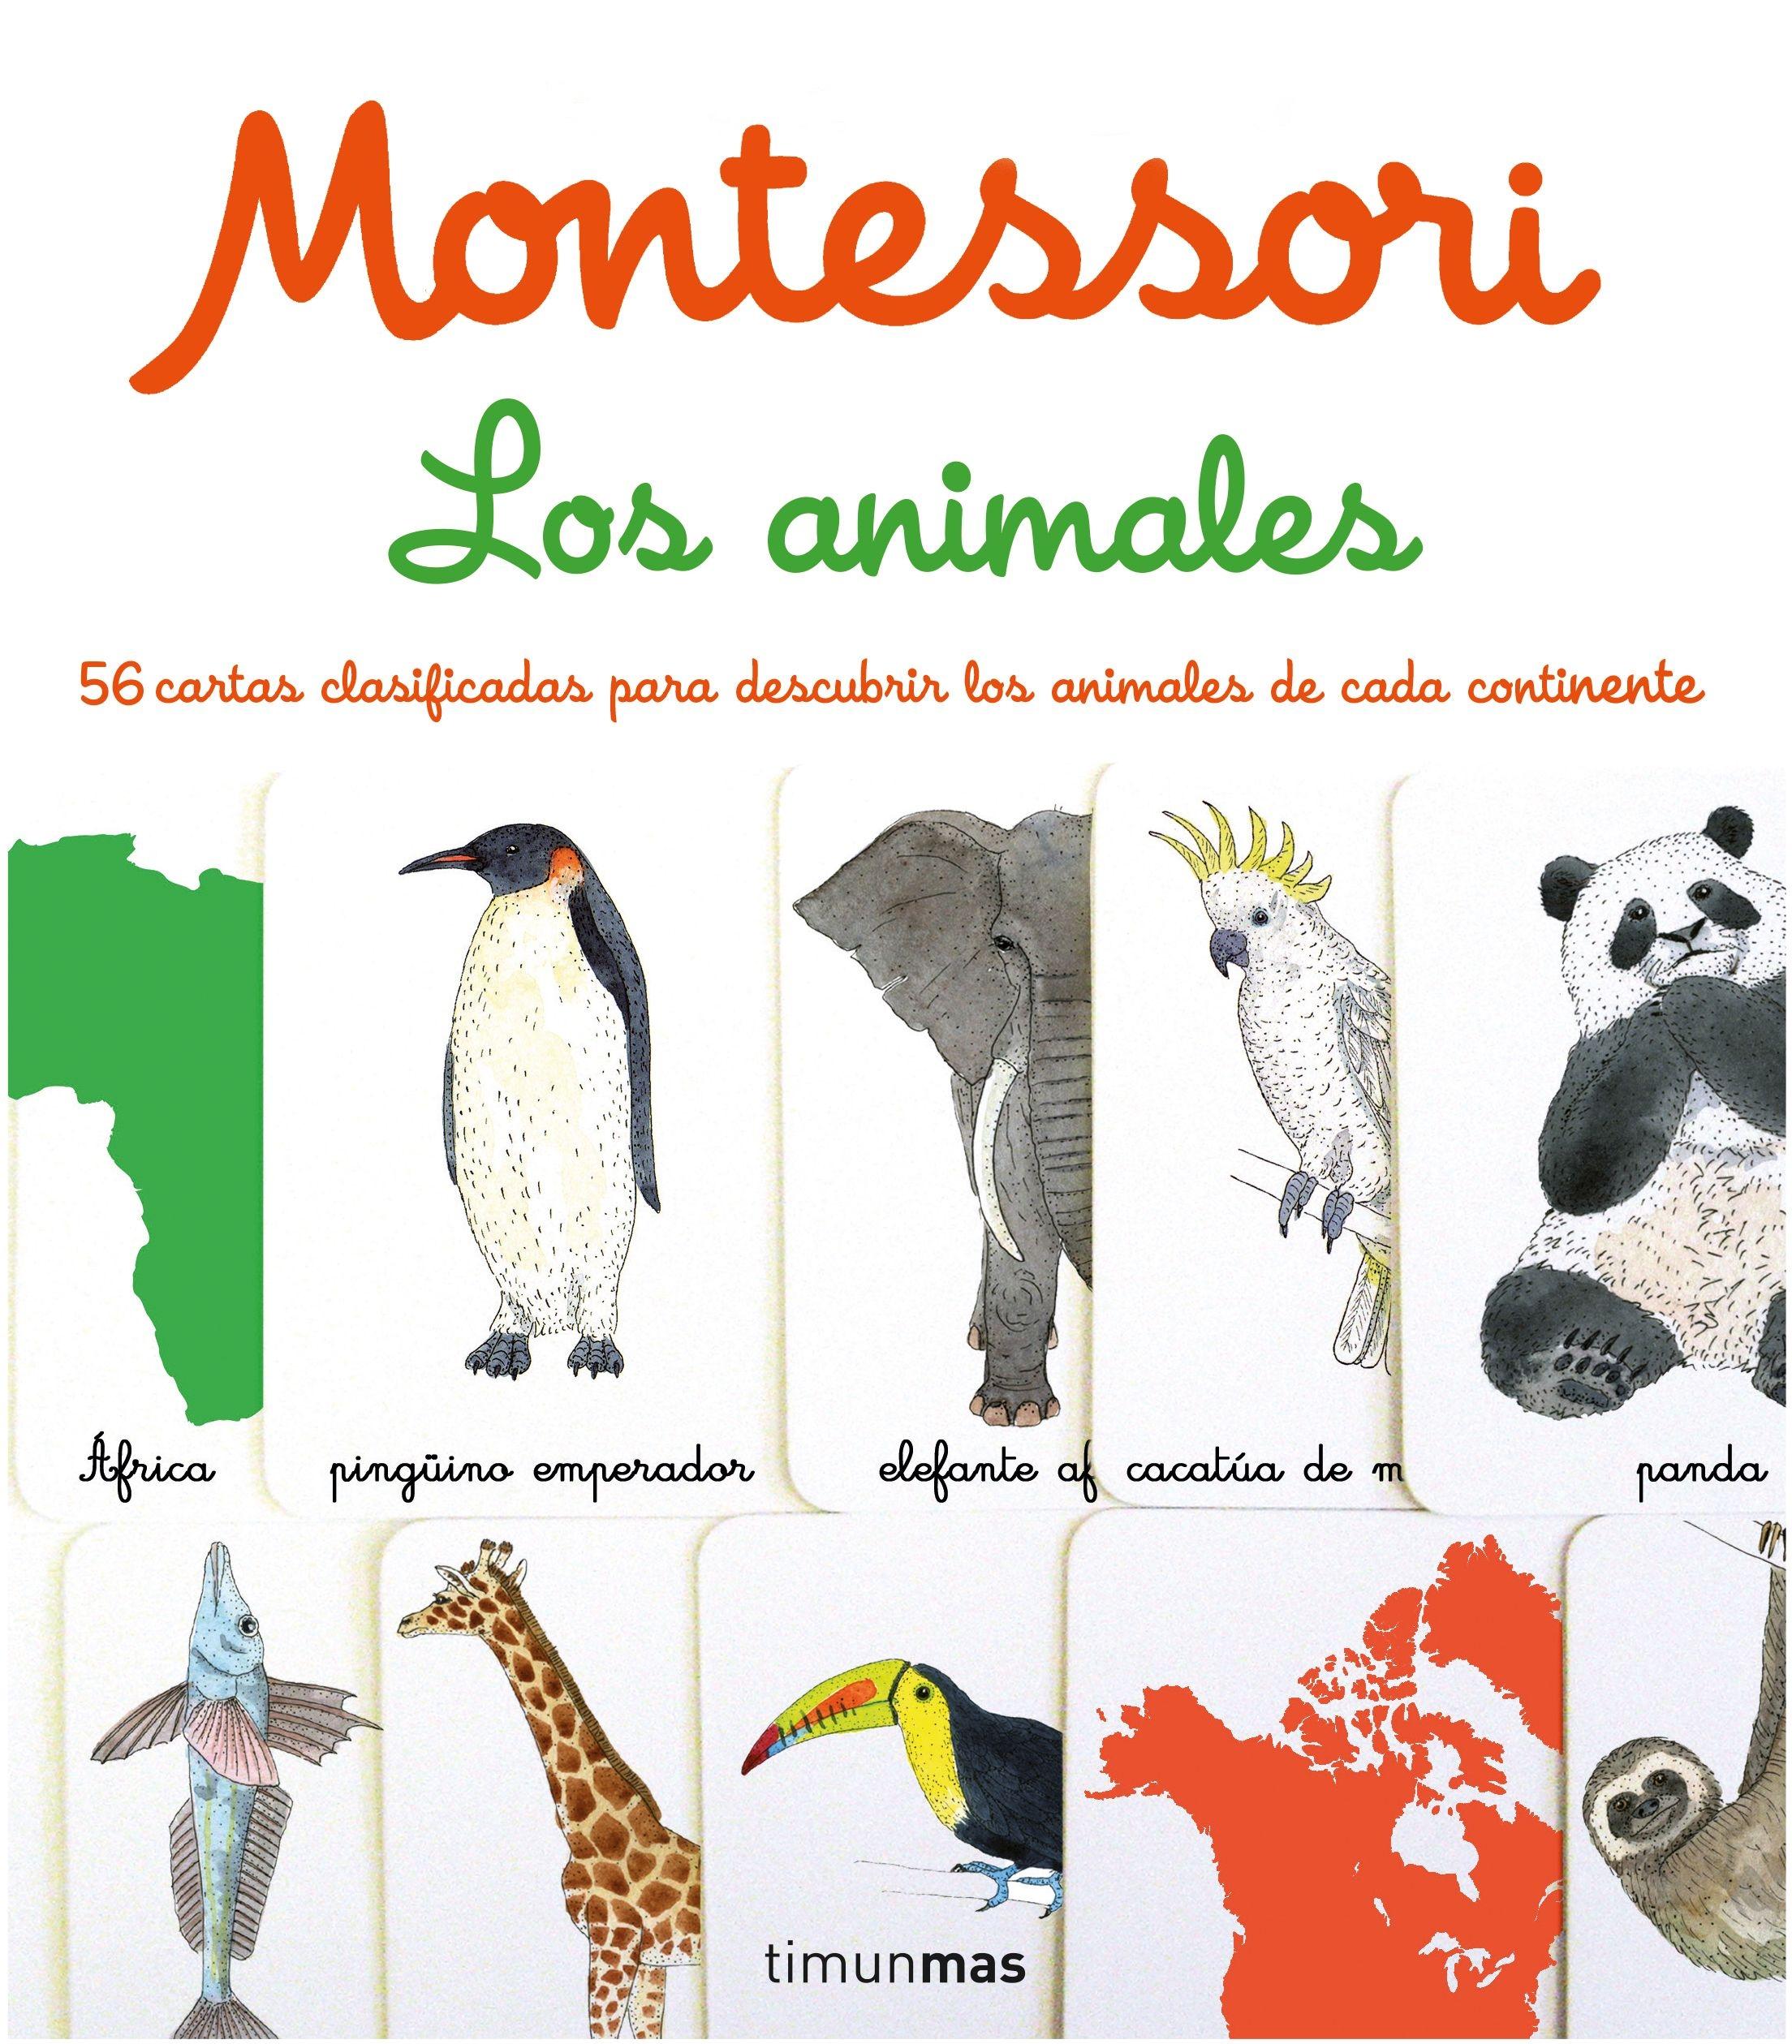 Montessori. los Animales "1 Libro y 56 Tarjetas". 